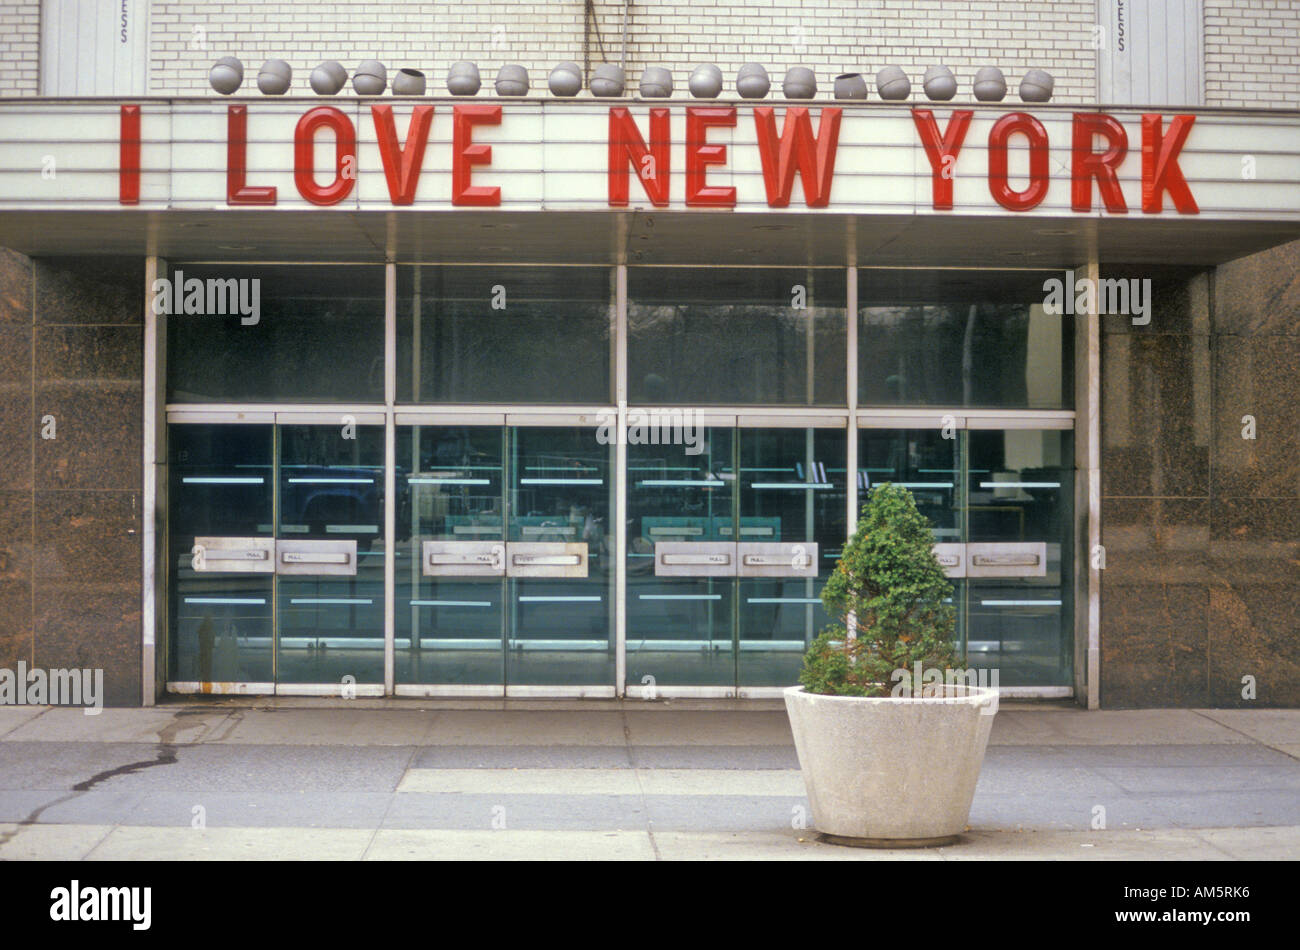 I Love New York sign in Columbus Circle New York City NY Stock Photo